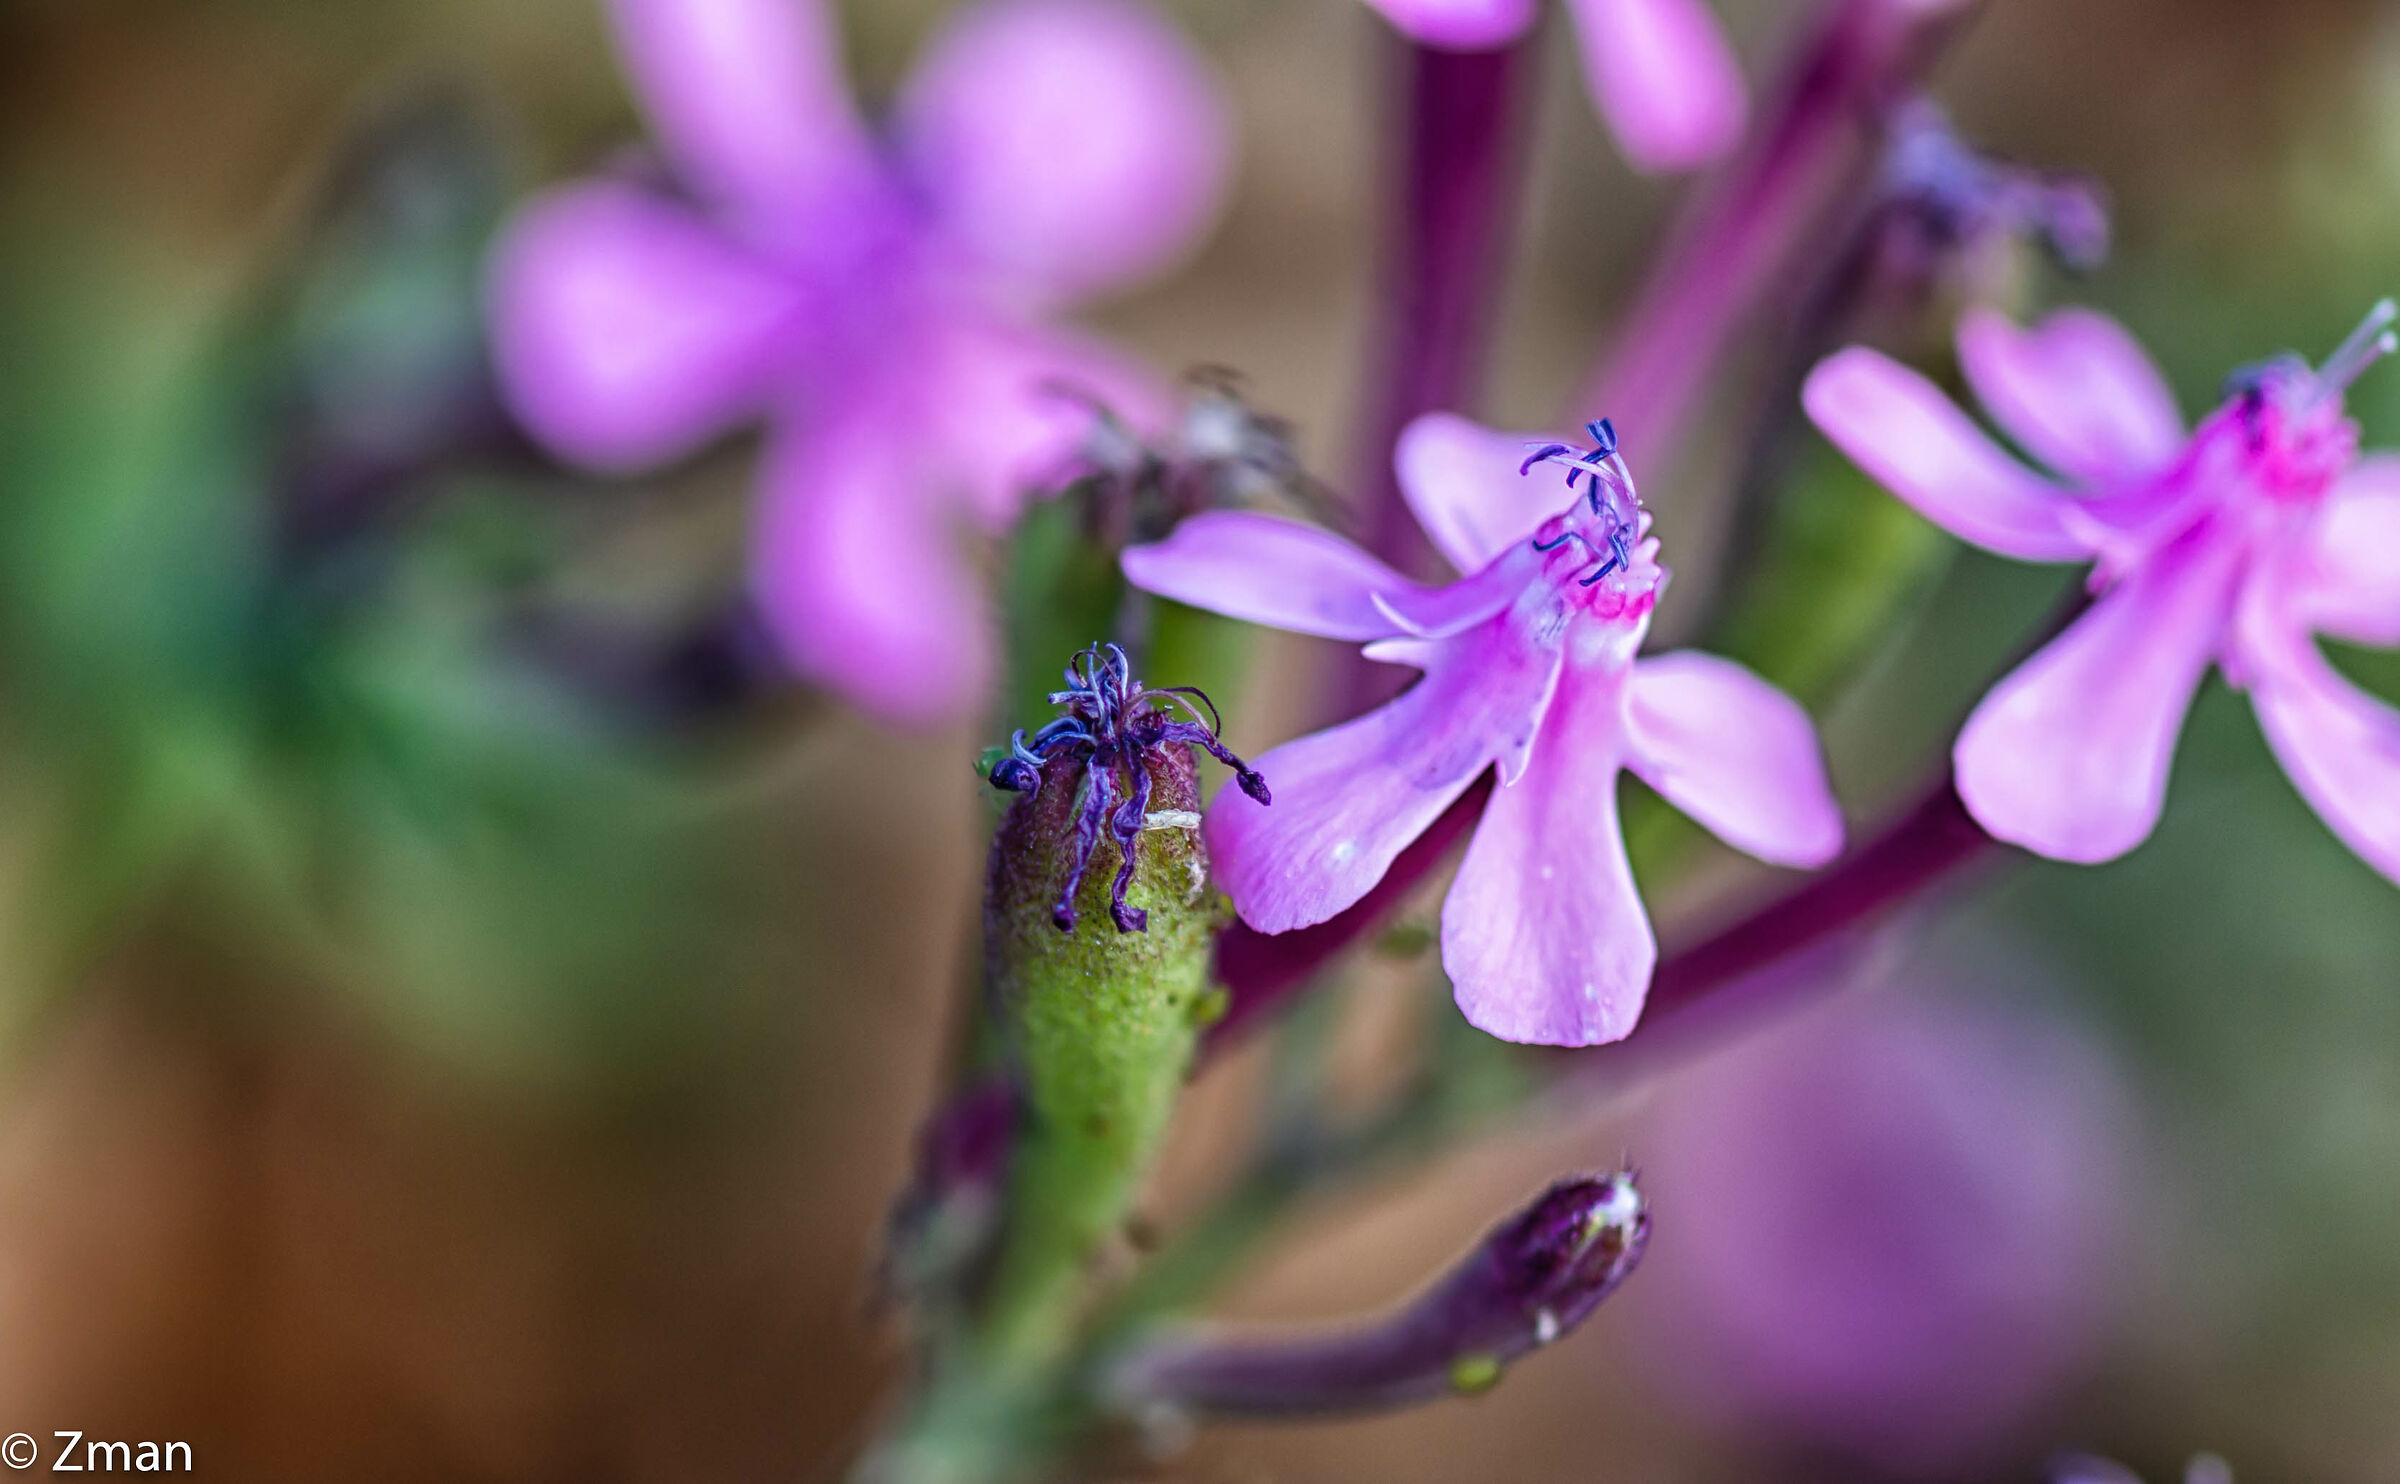 Garden Catchfly flower...